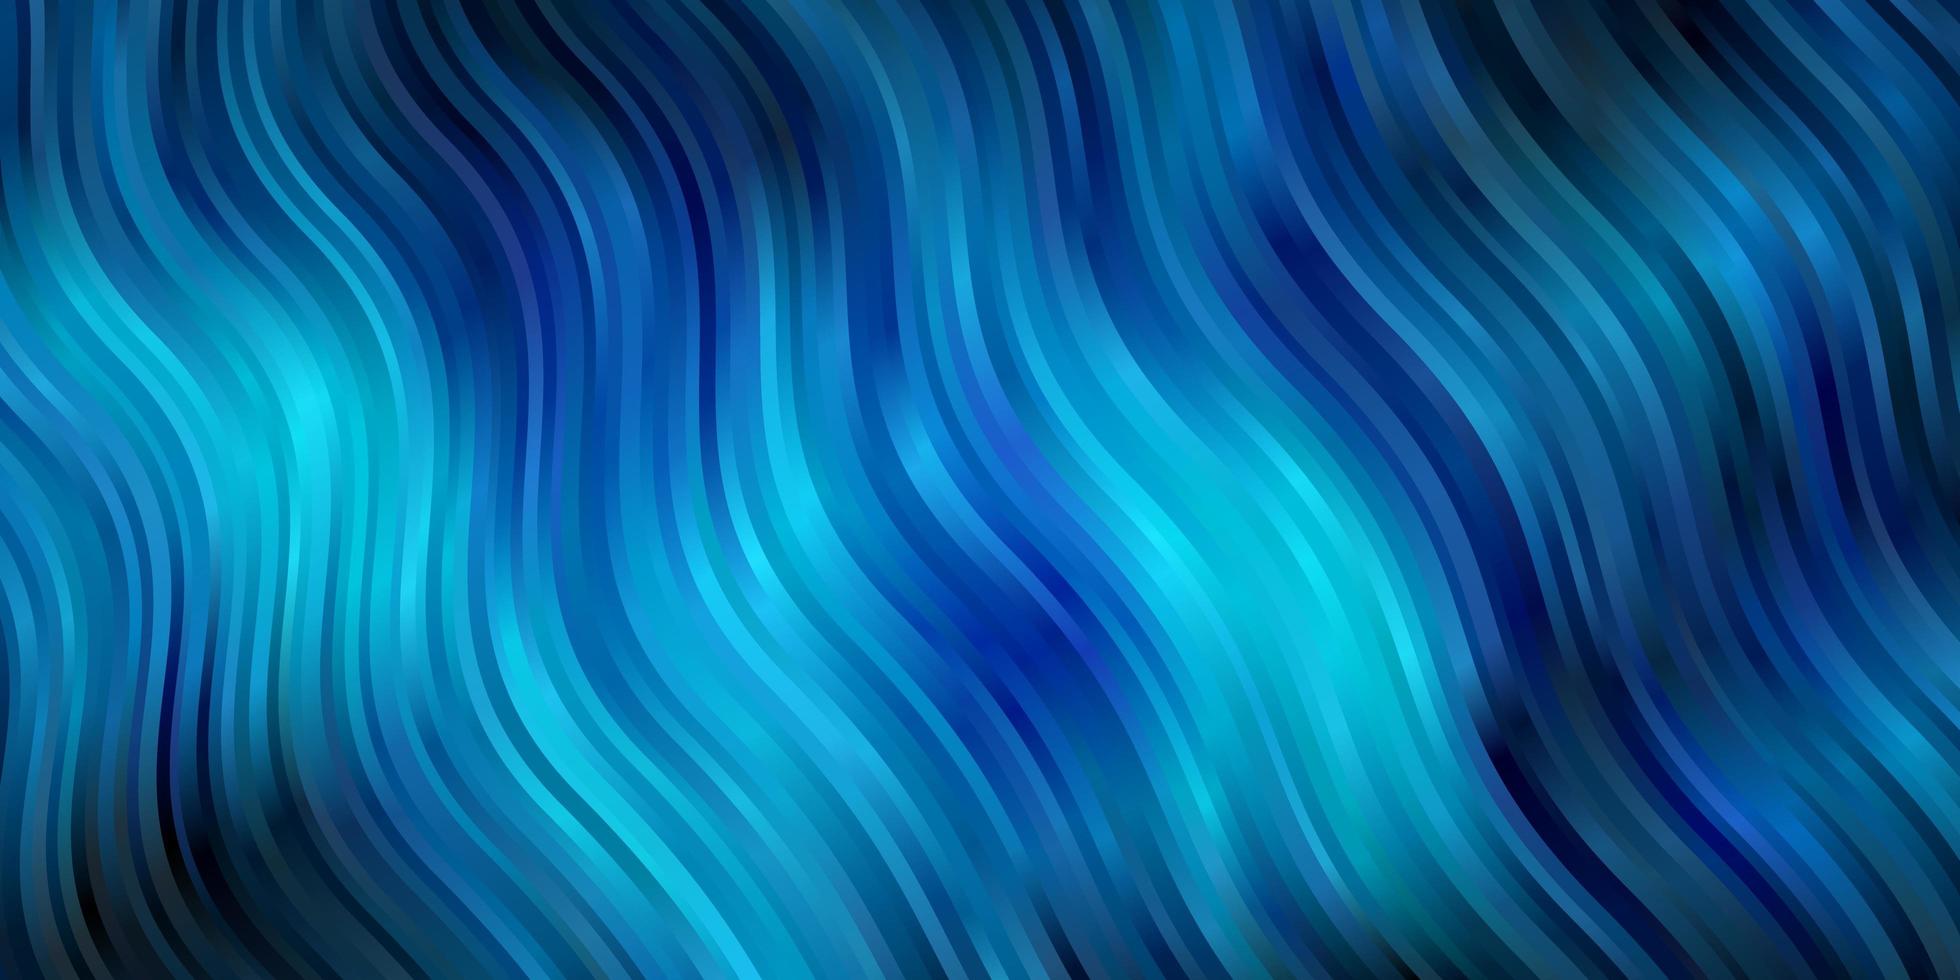 sfondo vettoriale azzurro con curve illustrazione astratta con linee sfumate bandy design intelligente per le tue promozioni